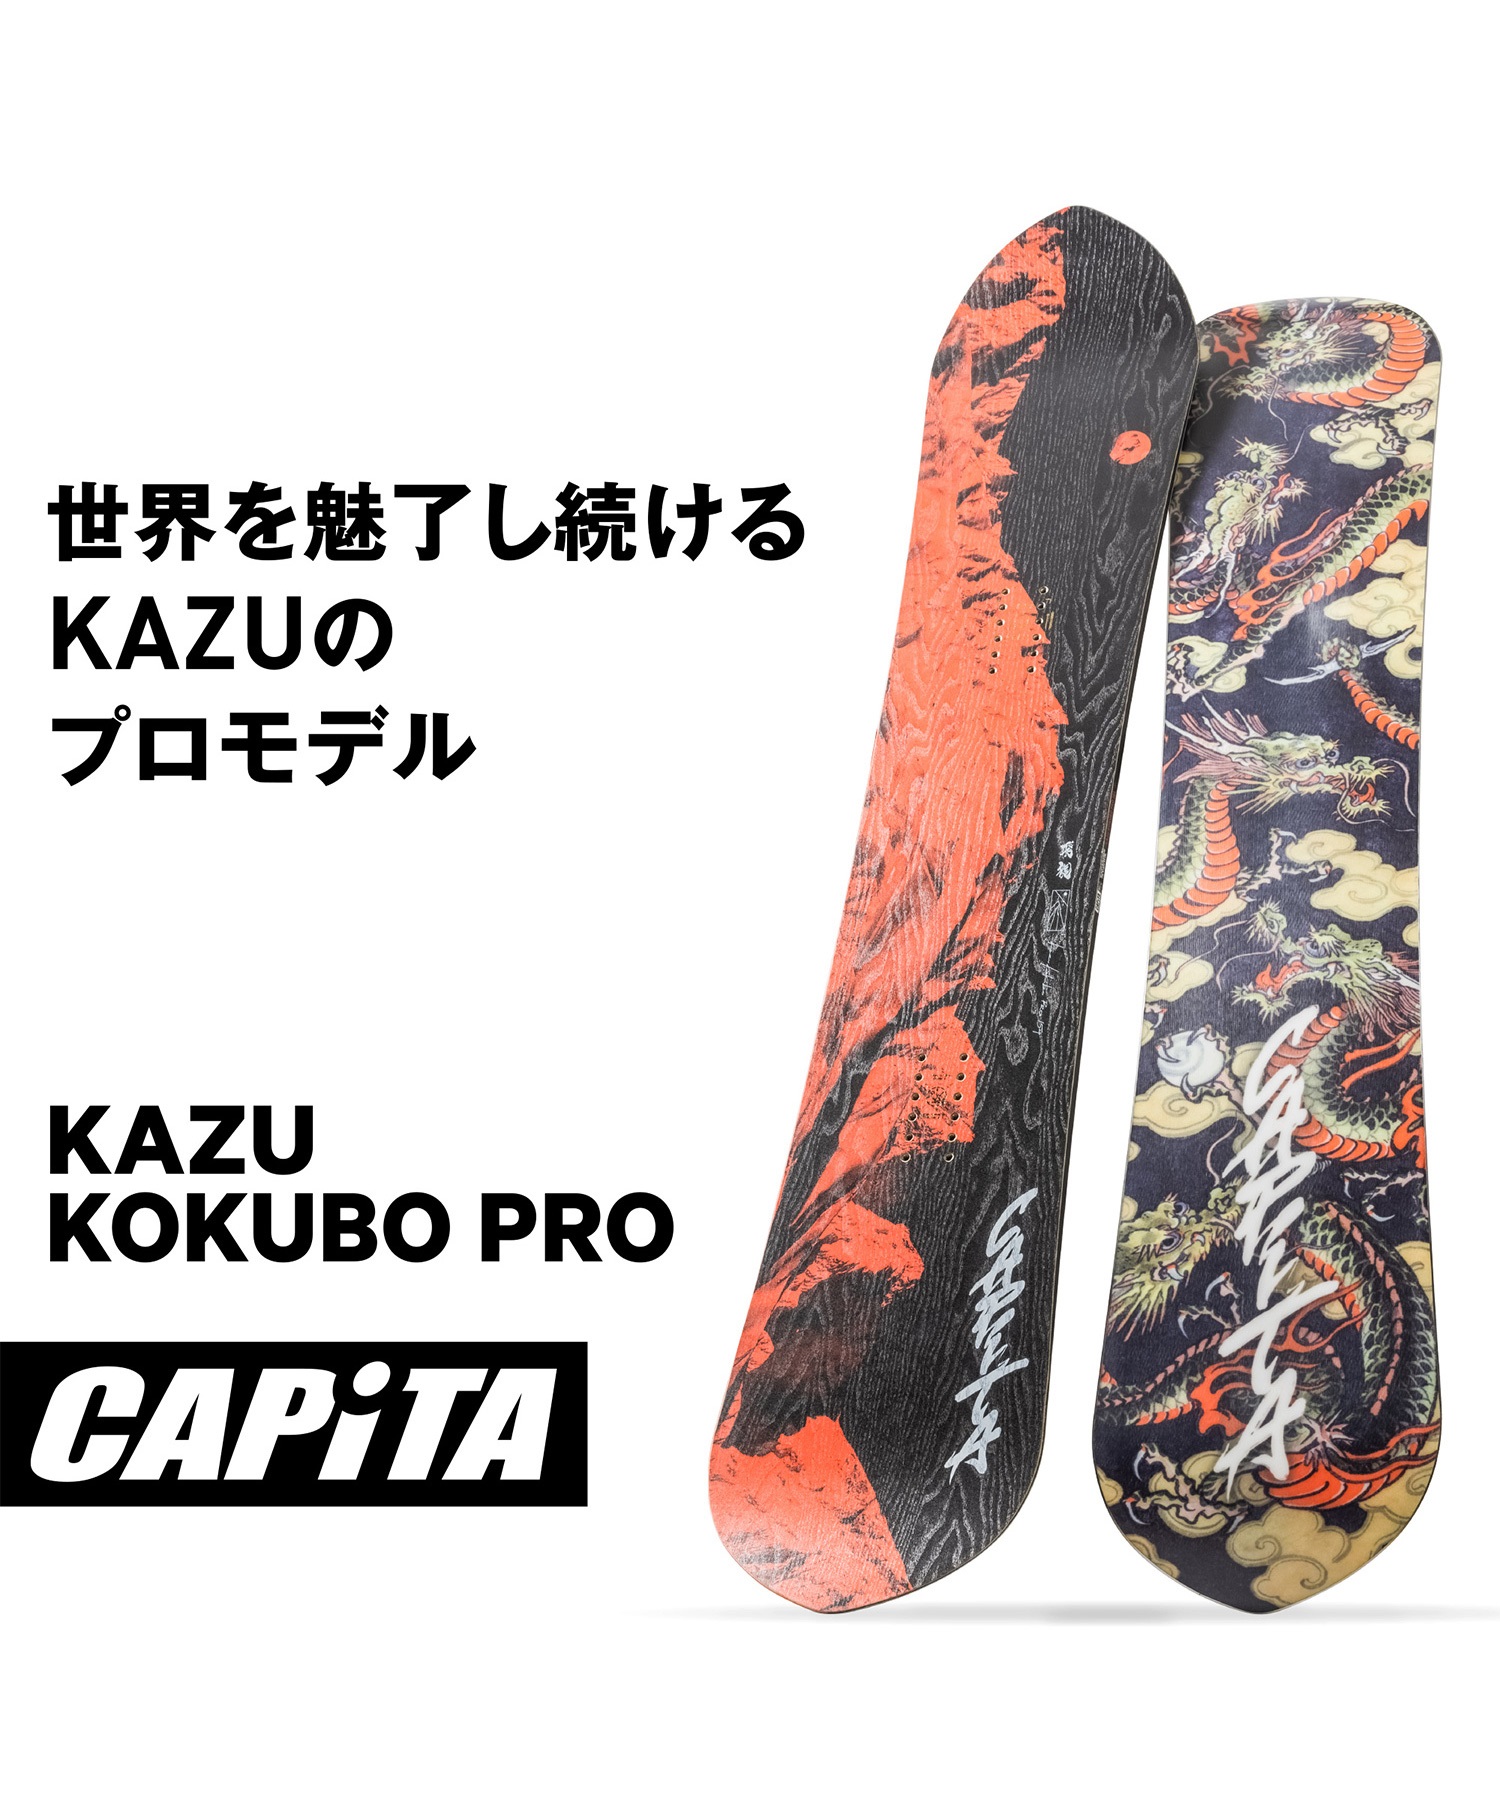 スノーボード 板 メンズ CAPITA キャピタ KAZU KOKUBO PRO 23-24モデル 